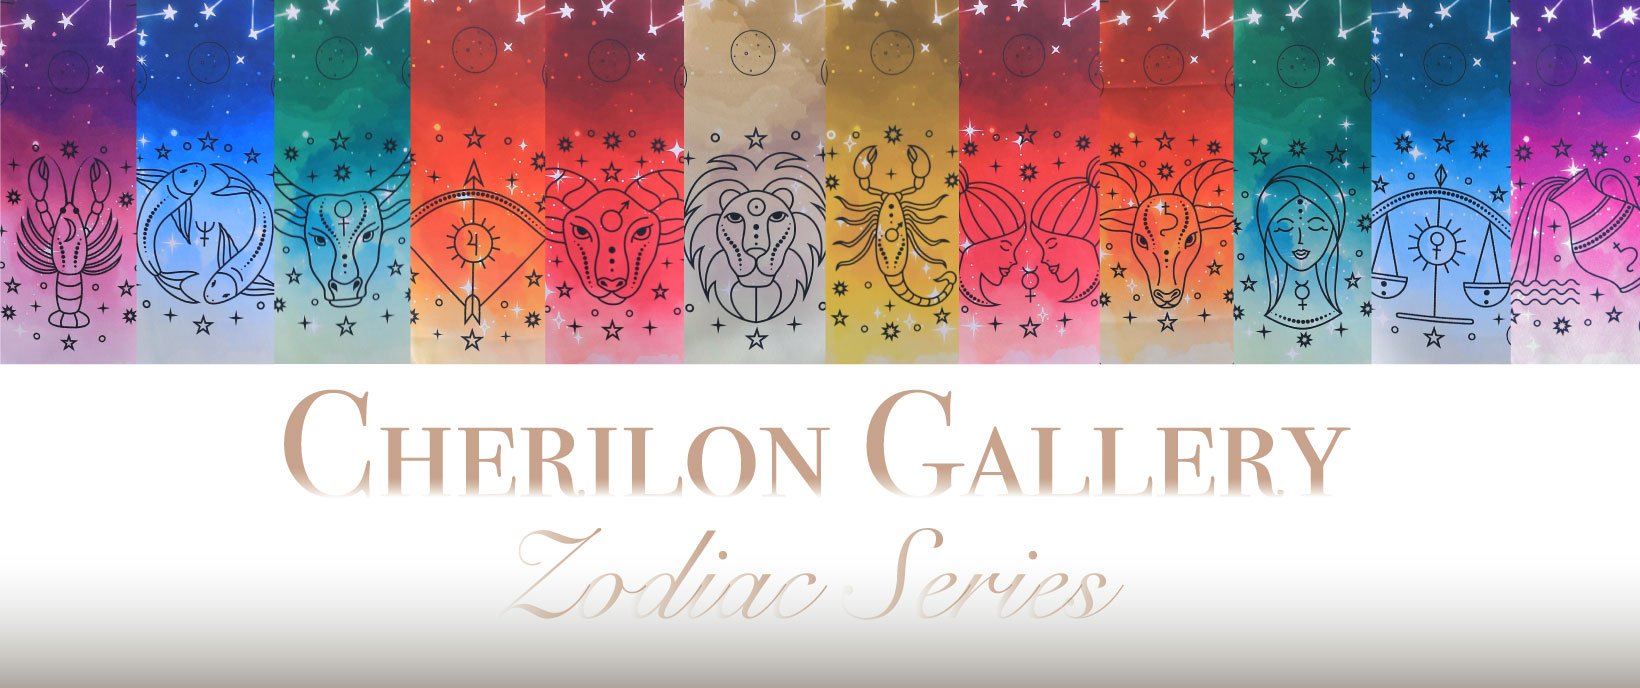 Cherilon Gallery ของขวัญเพื่อสุภาพสตรี ผ้าพันคอเสริมดวง ผ้าพันคอราศี